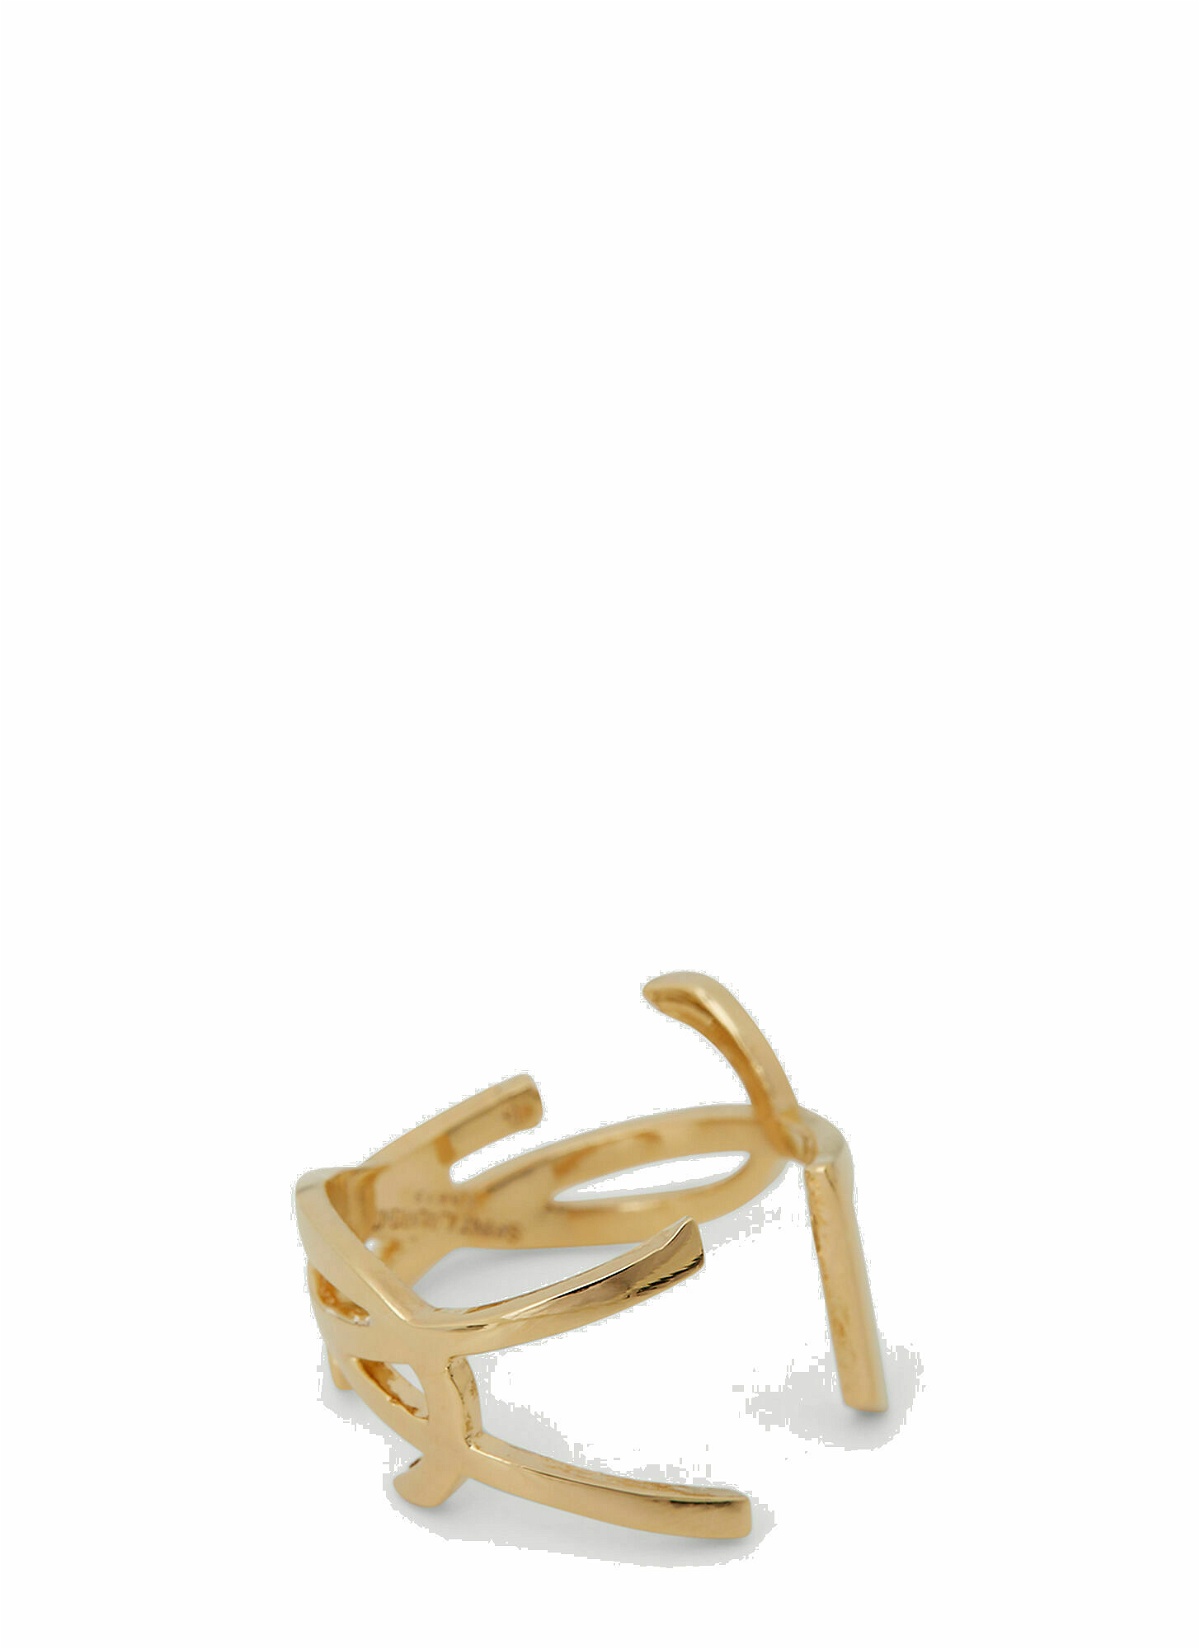 Photo: Saint Laurent - Monogram Ring in Gold